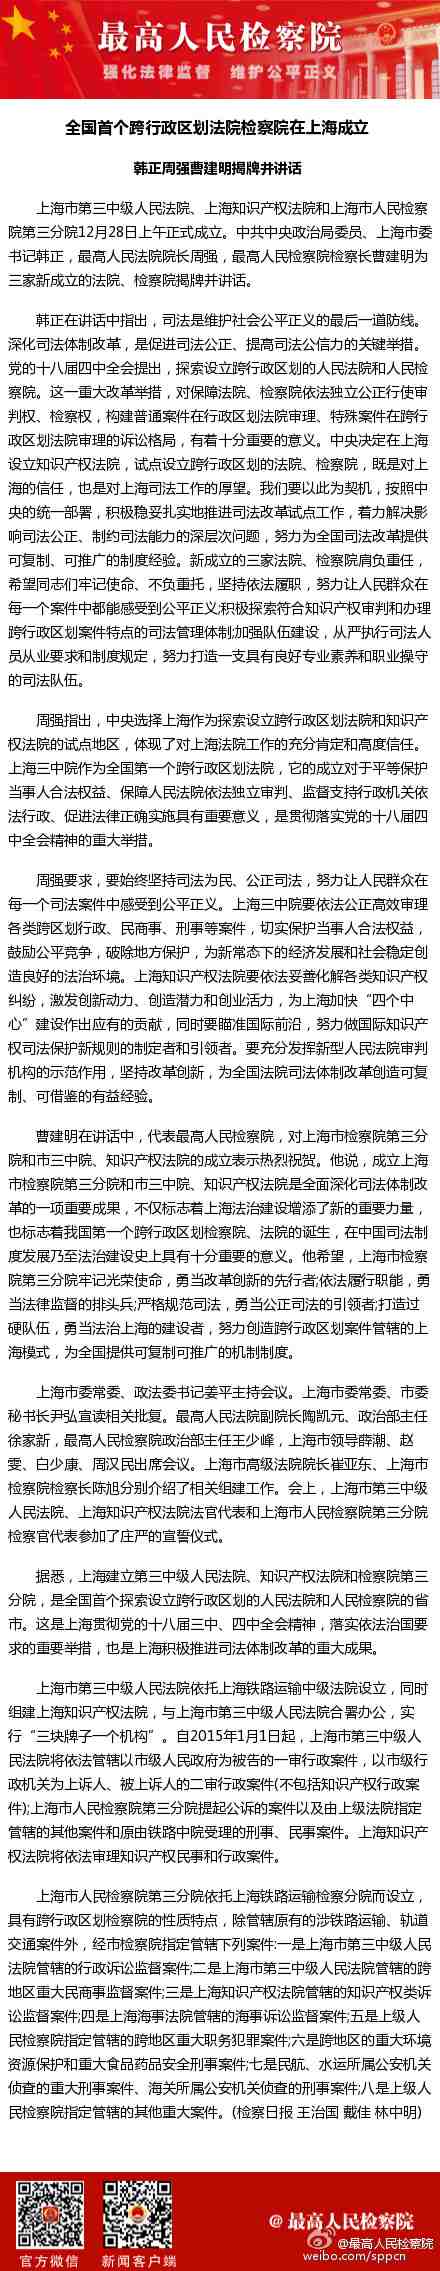 全国首个跨行政区划法院检察院在上海成立